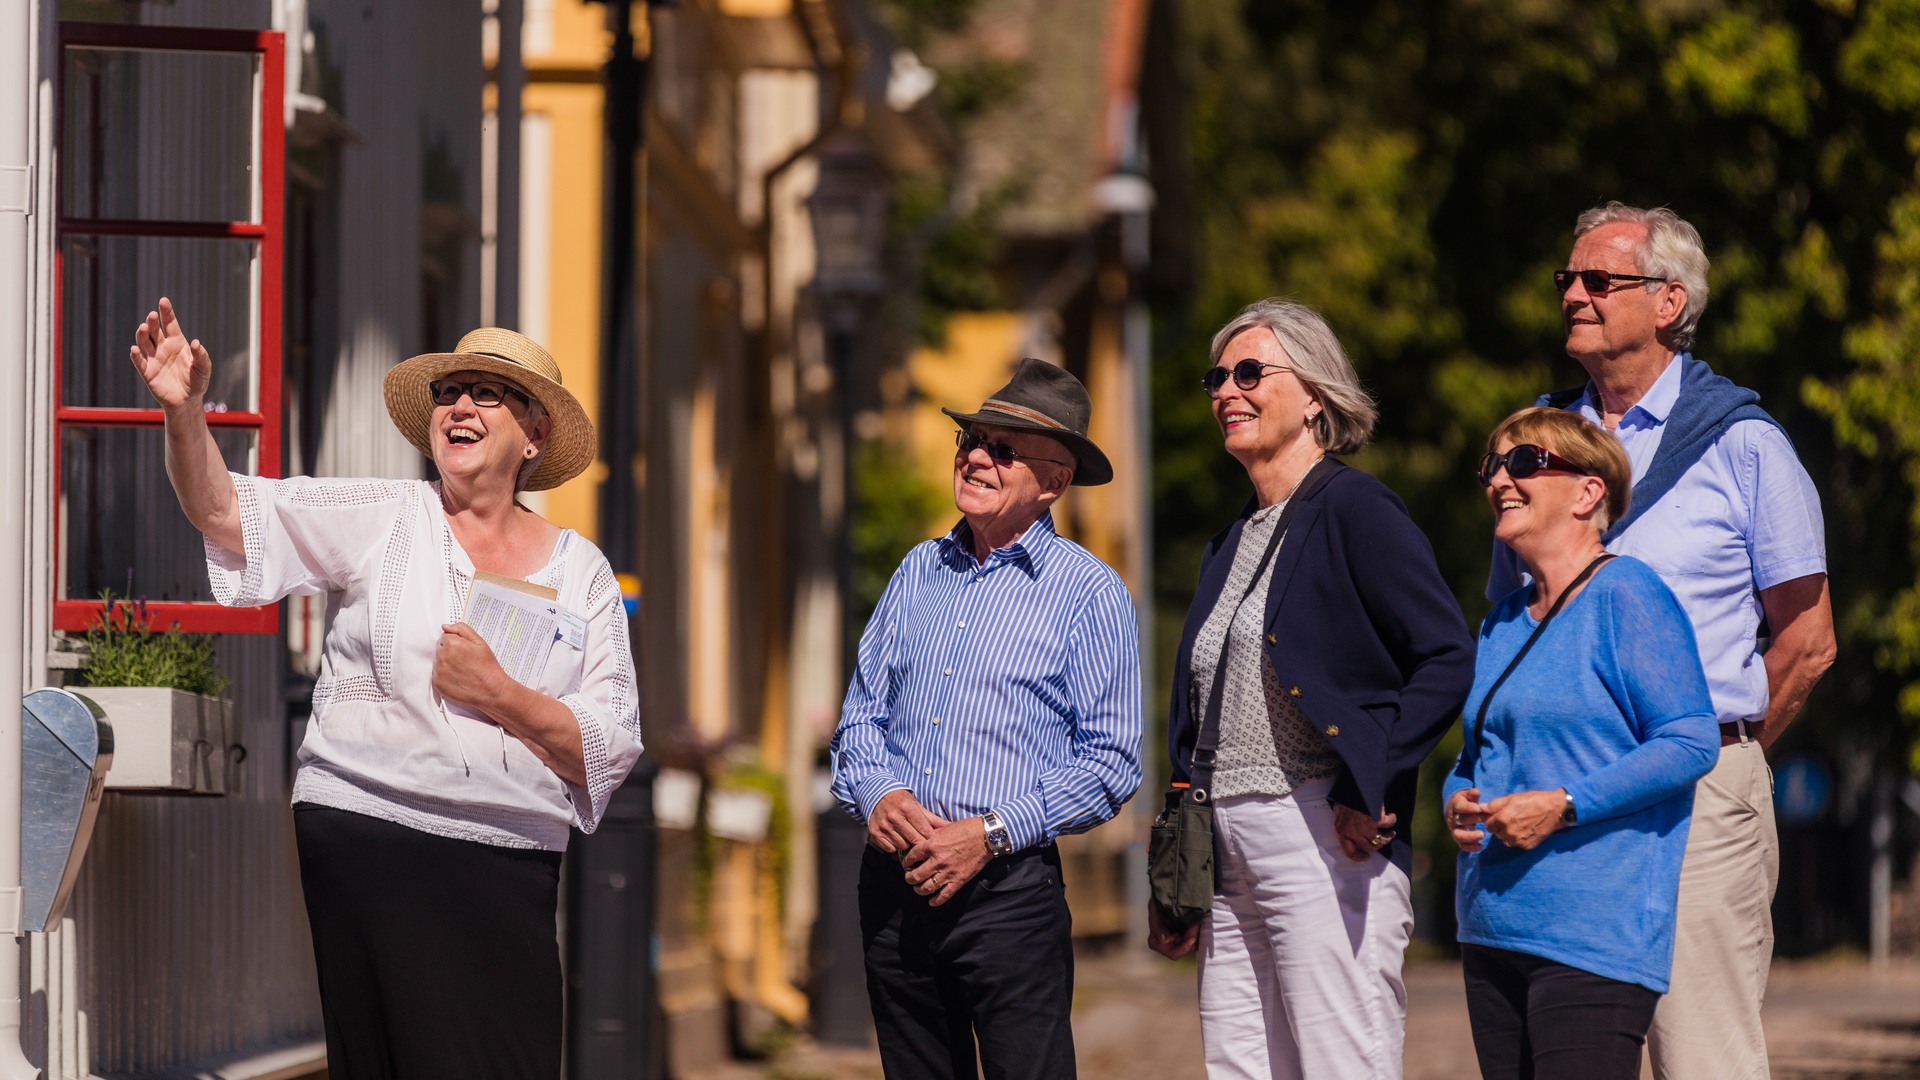 En guide visar fyra turister en av villorna i stadsparken.